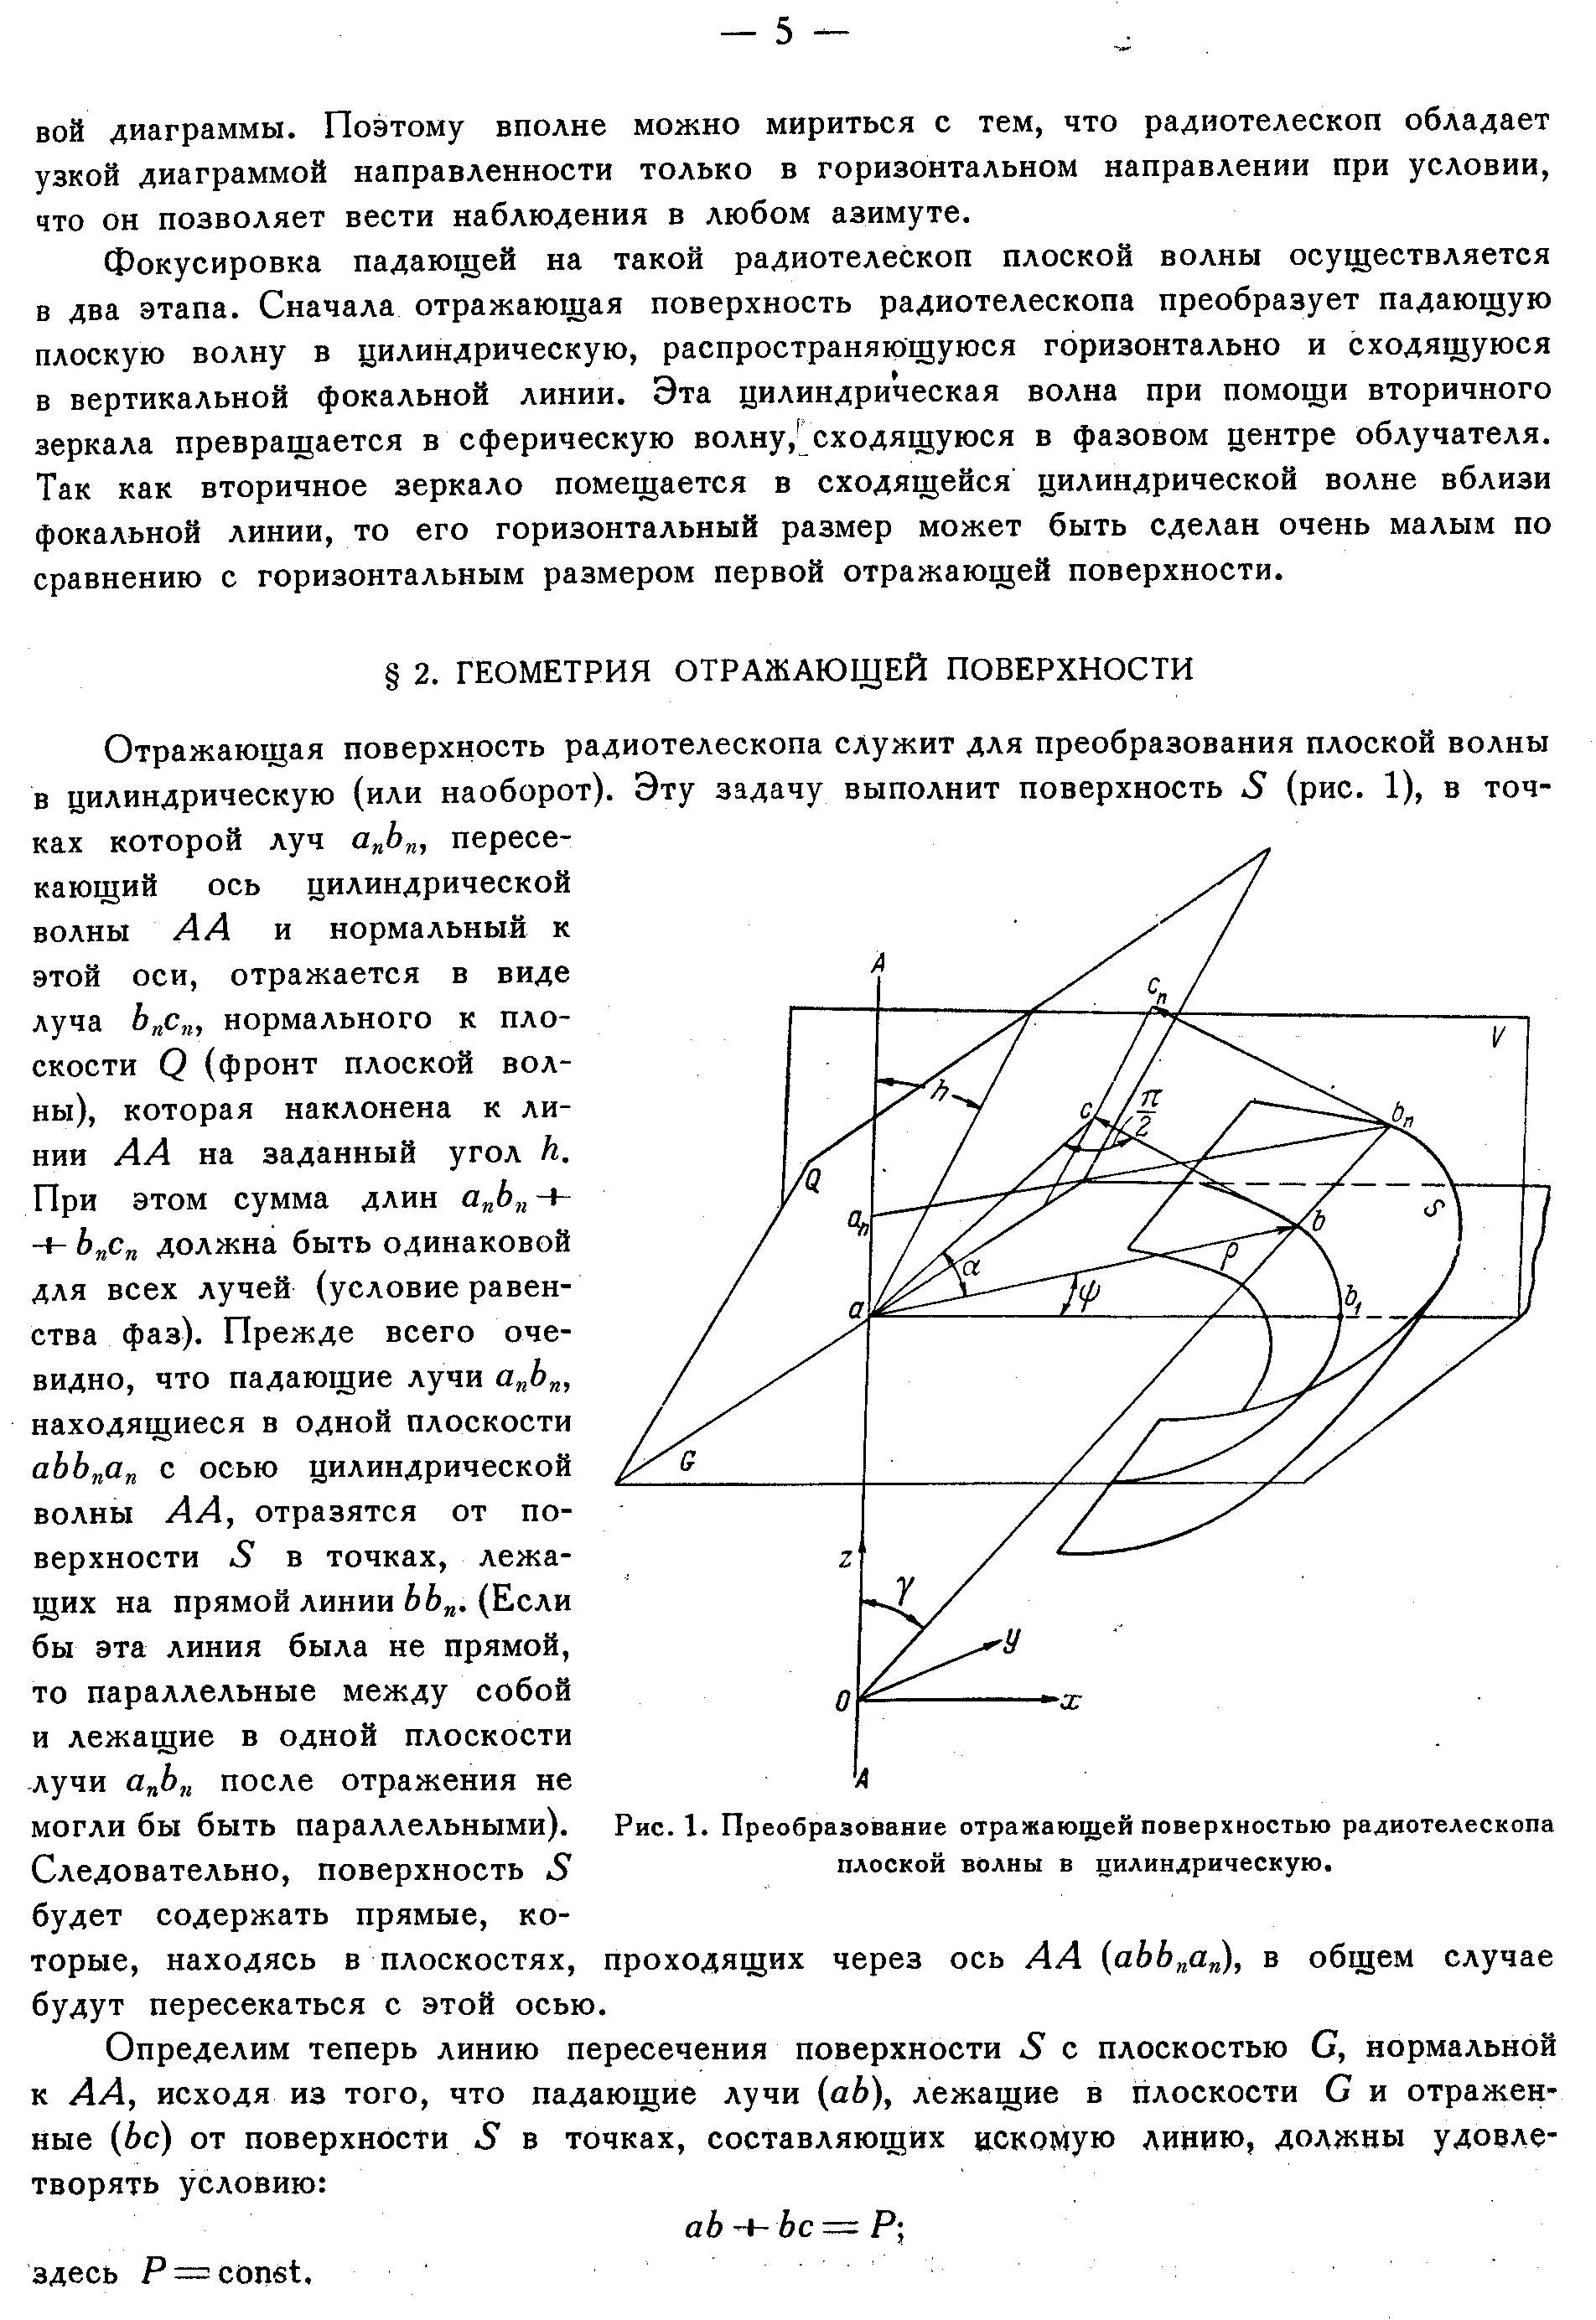 Хайкин С.Э. и др.,стр.3